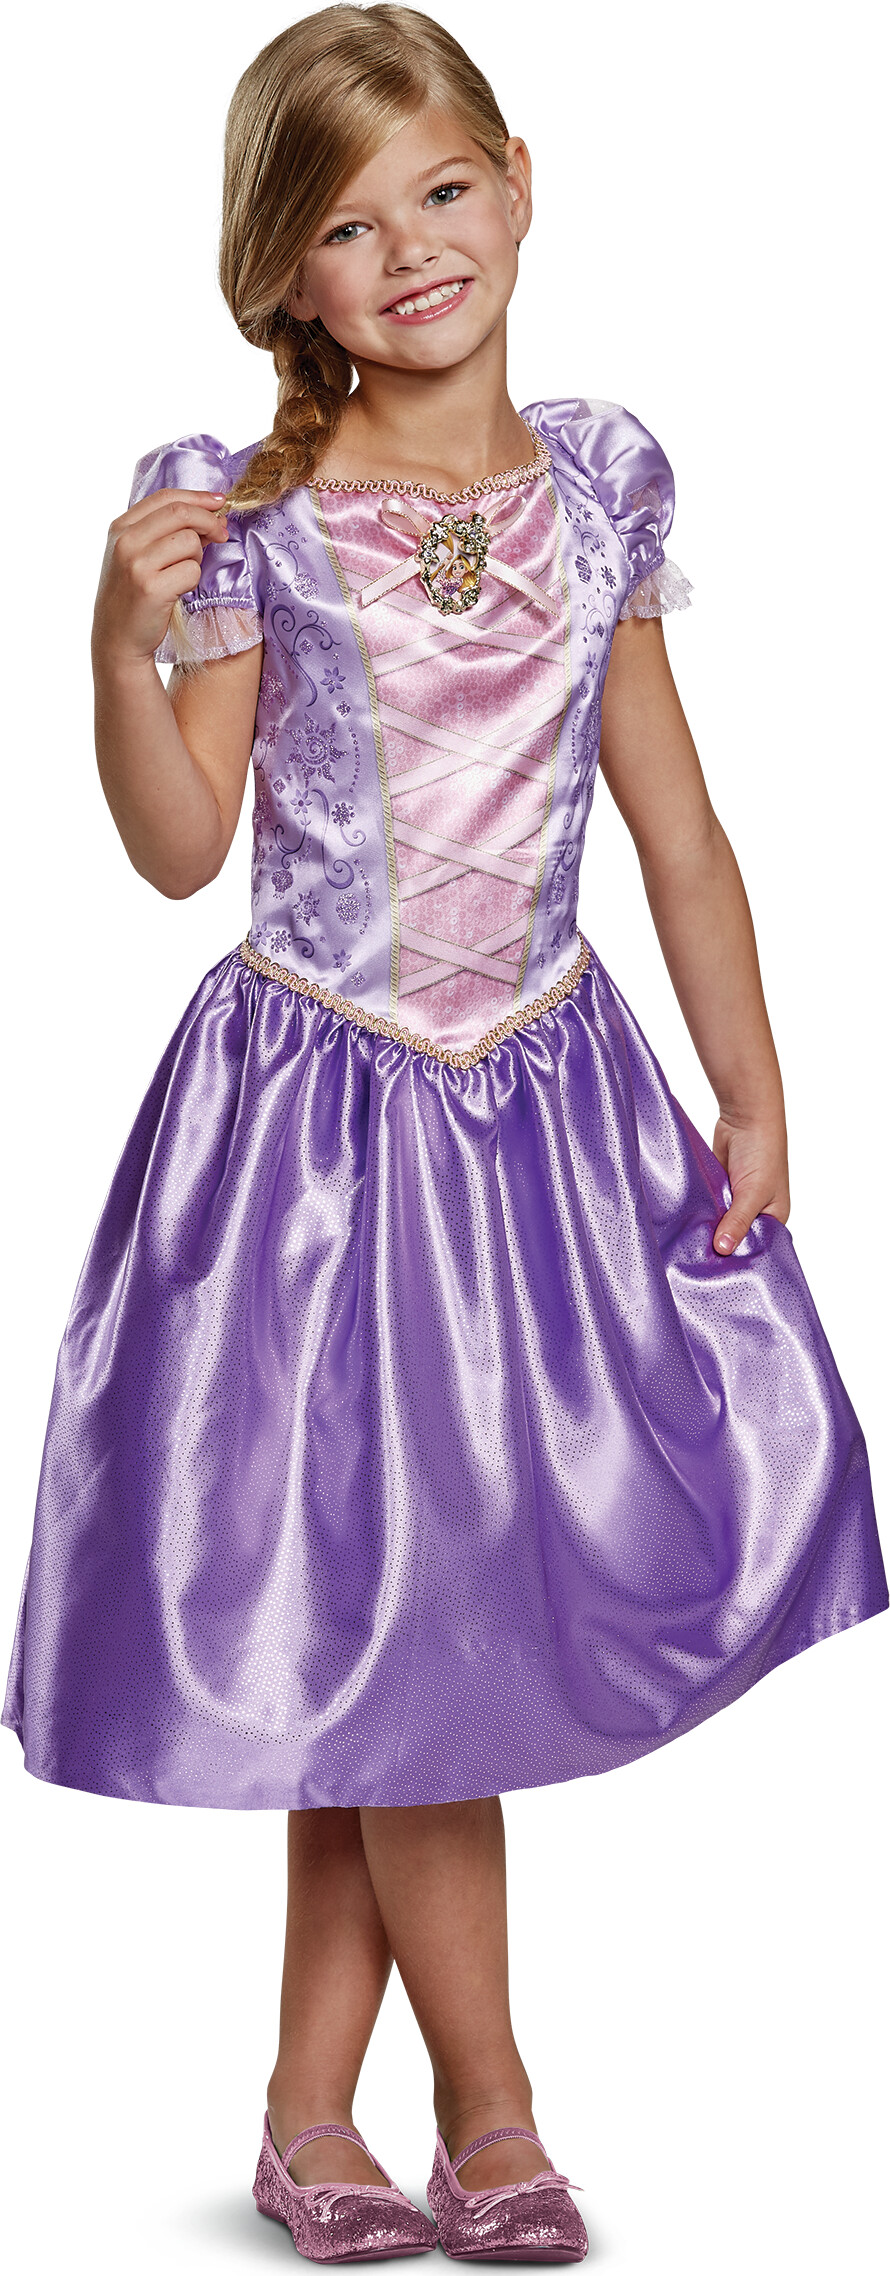 Billede af Rapunzel Kostume Til Børn - 128 Cm - Disney Princess